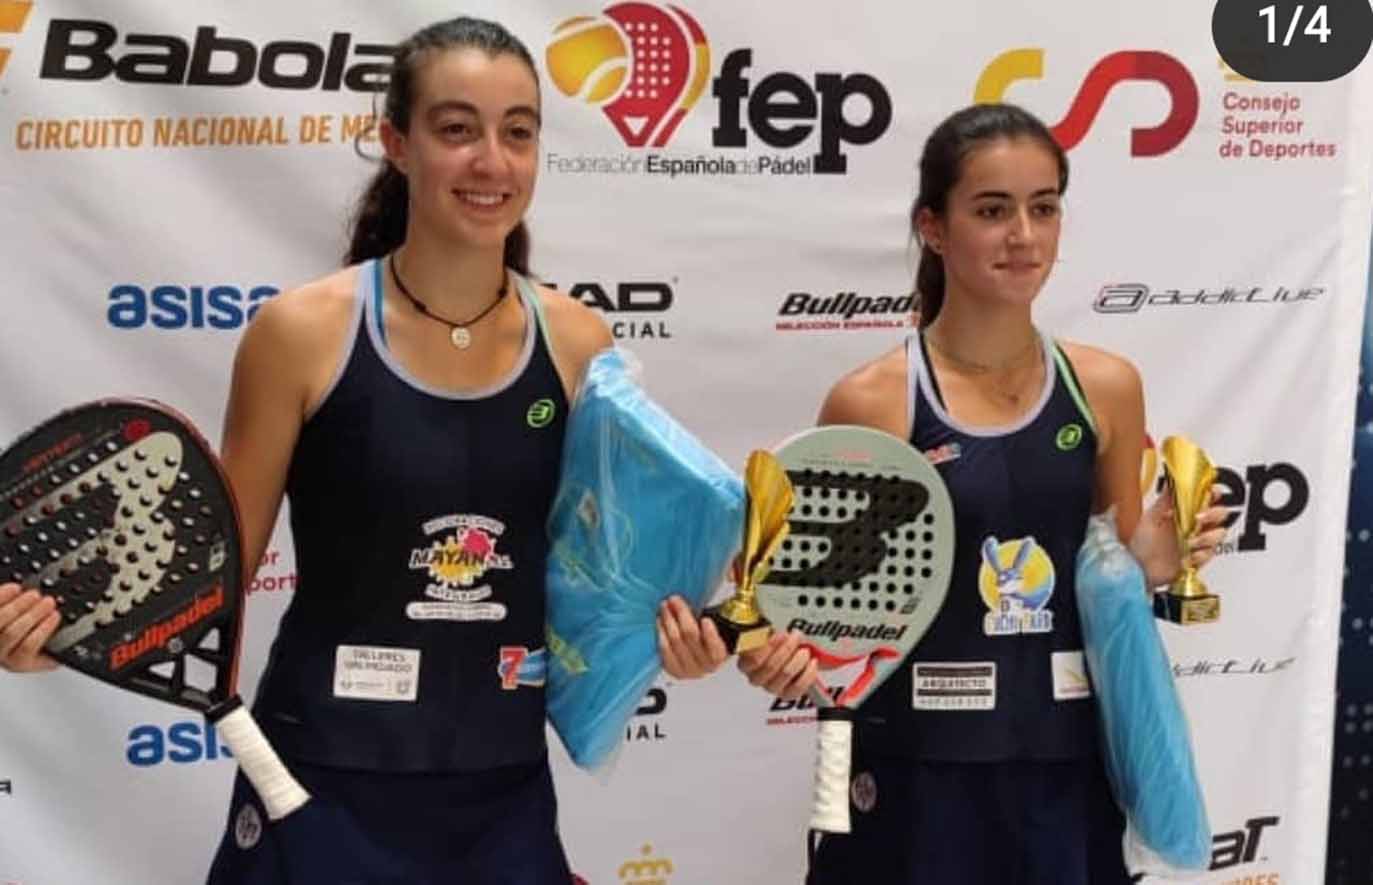 Marta Arellano y Claudia Fernández, campeonas de España en categoría cadete